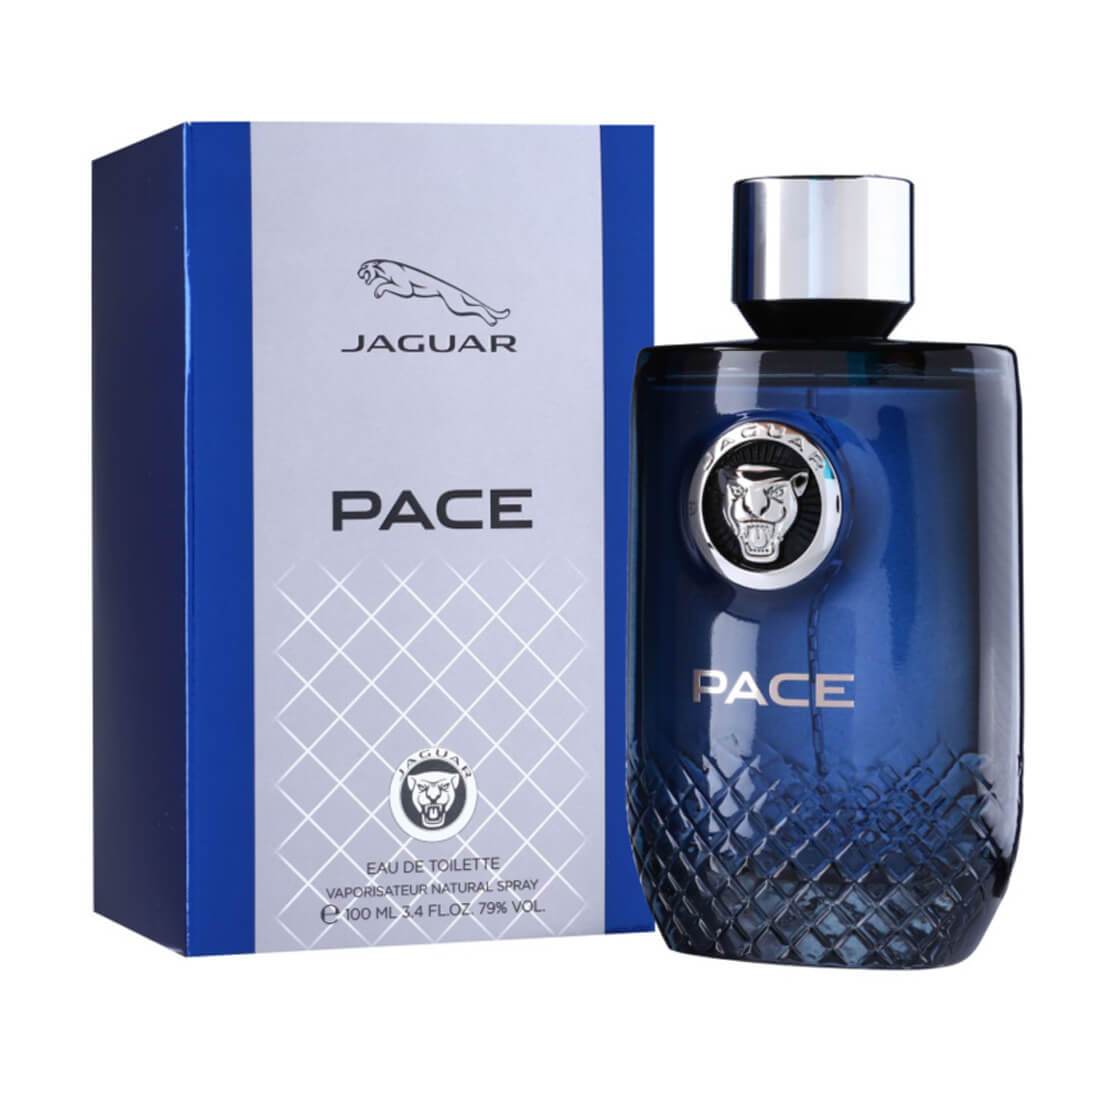 Jaguar Pace Eau De Toilette Perfume For Men